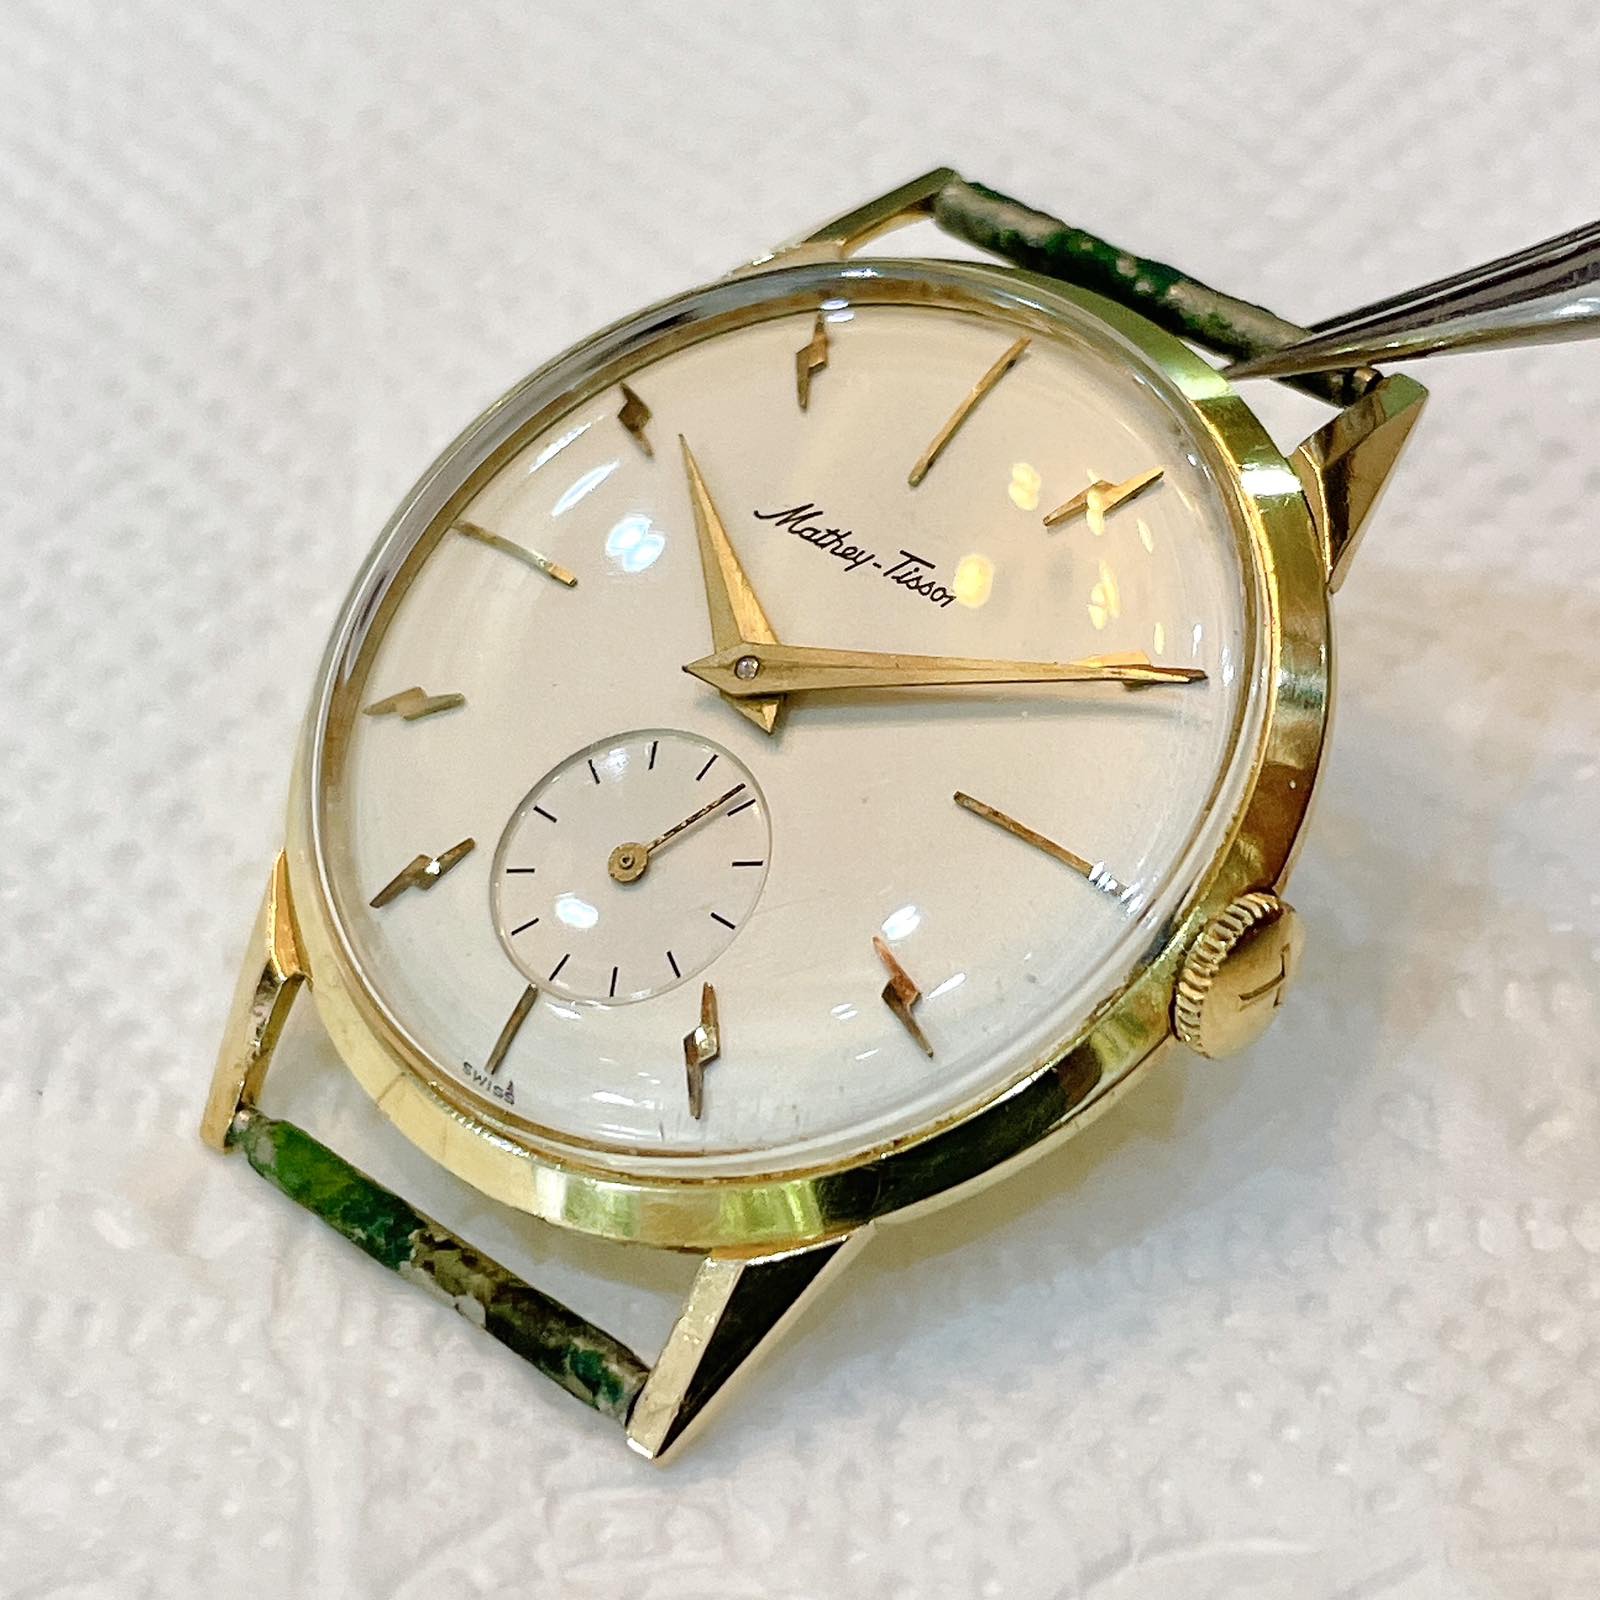 Đồng hồ cổ Mathey Tissot lên dây vàng đúc đặc 18k chính hãng thụy Sĩ 